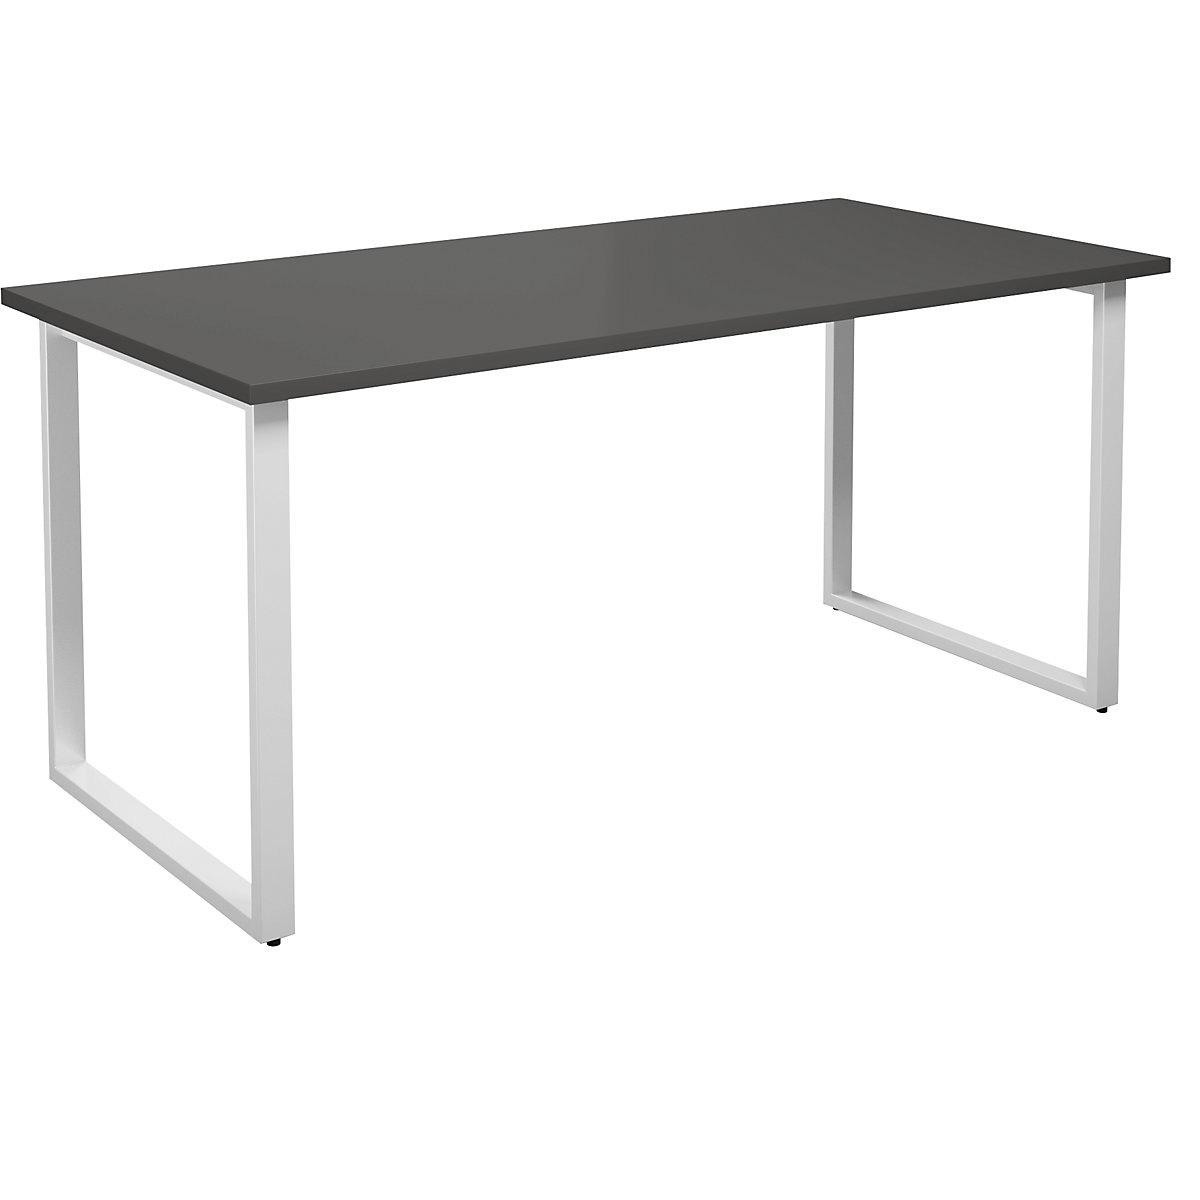 DUO-O multi-purpose desk, straight tabletop, WxD 1600 x 800 mm, dark grey, white-15